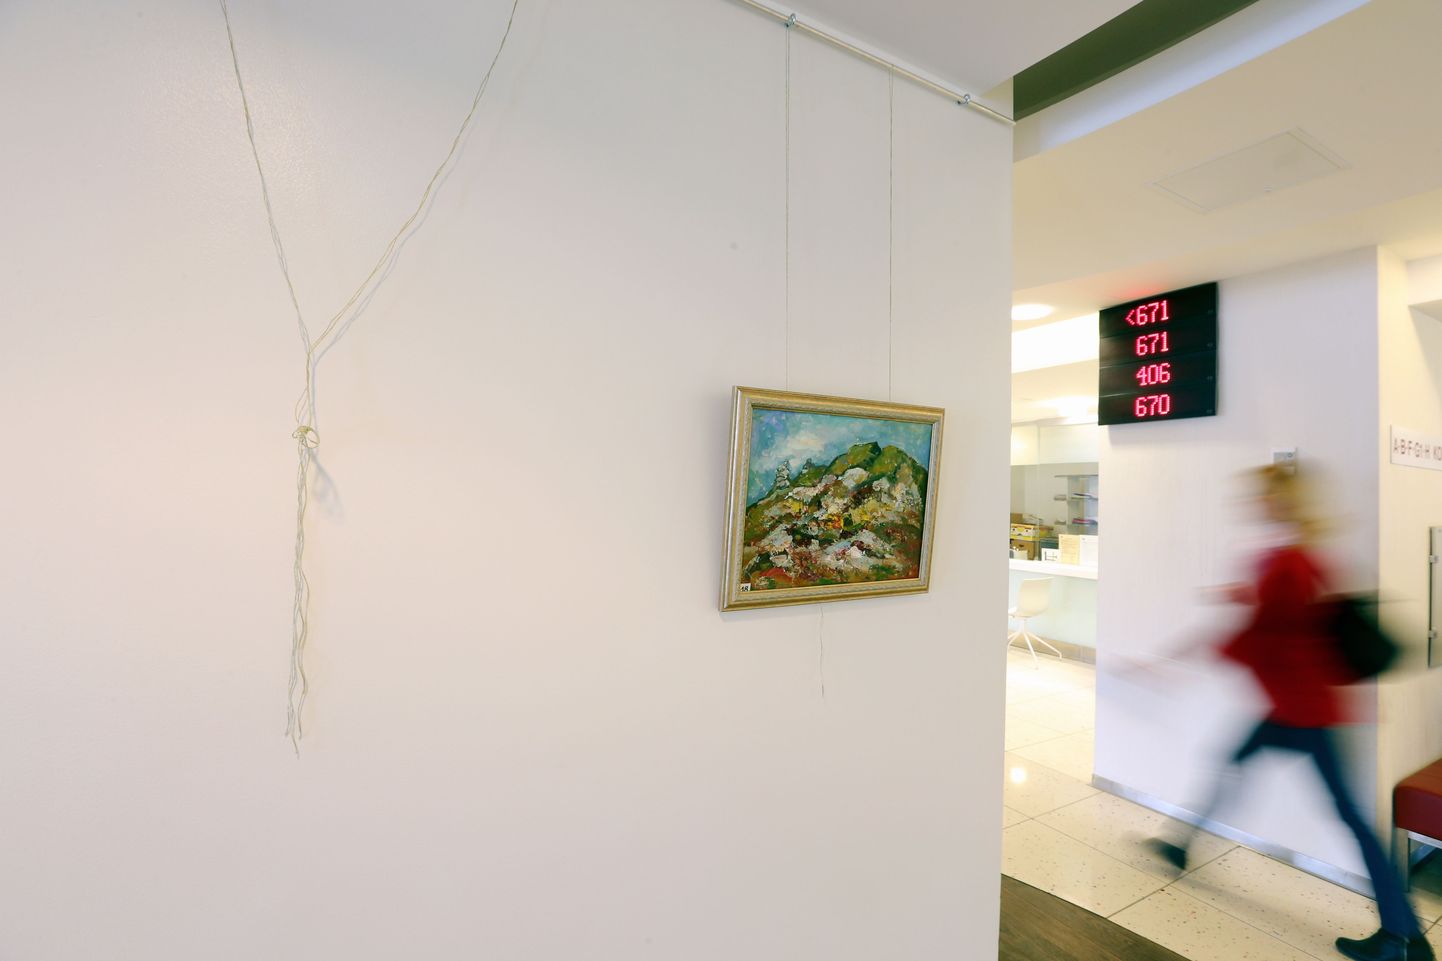 Maarjamõisa haigla fuajees on üleval Piibe-Imbi Arraku maalide näitus. Väljapanekult varastati kevadlilli kujutav maal.